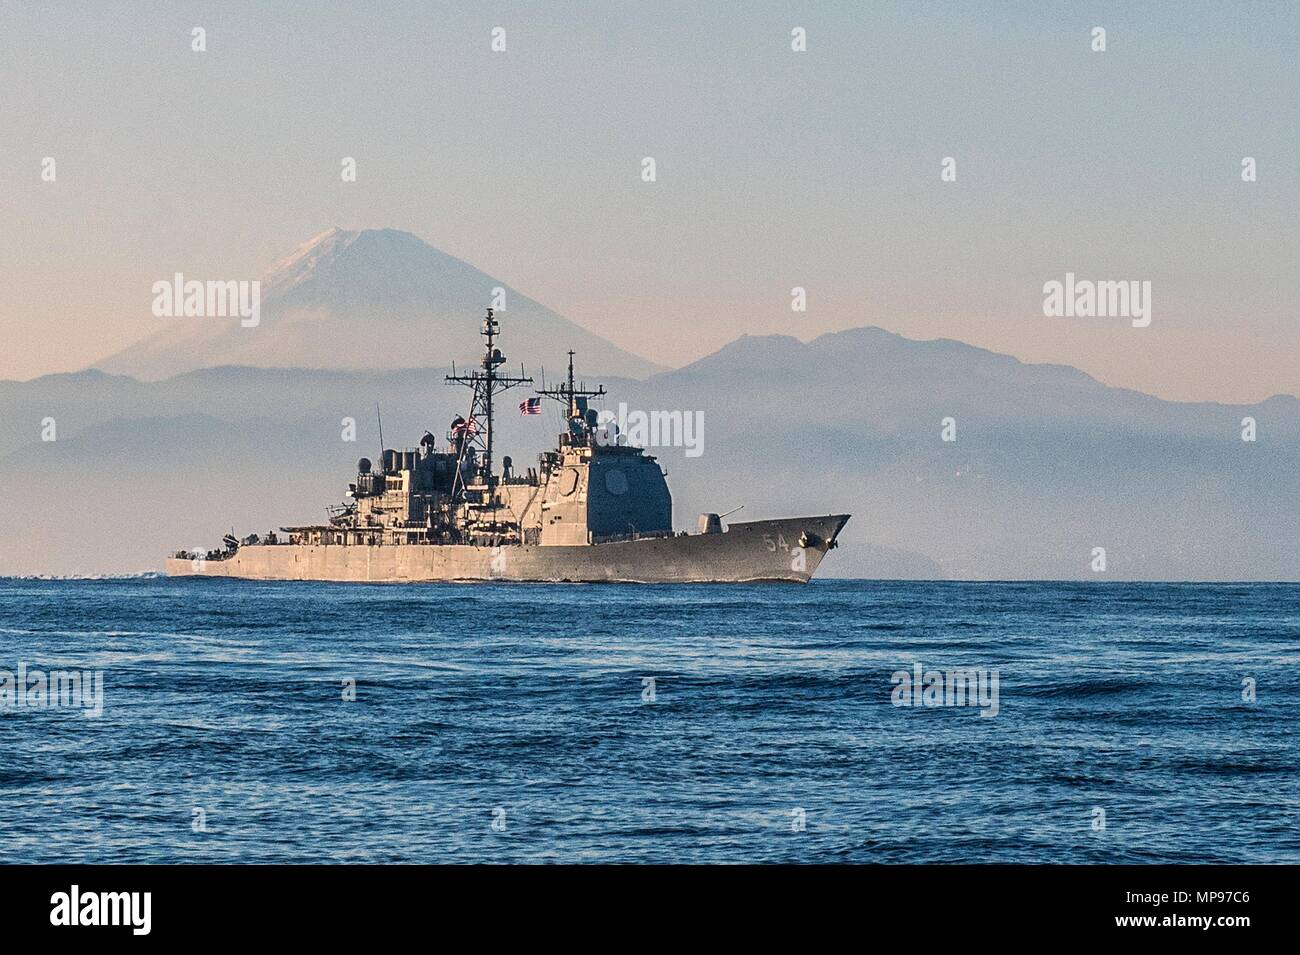 Gli Stati Uniti Navy Ticonderoga-class guidato-missili cruiser USS Antietam cuoce a vapore in corso Novembre 22, 2014 nel Mare del Giappone. (Foto di David Flewellyn via Planetpix) Foto Stock